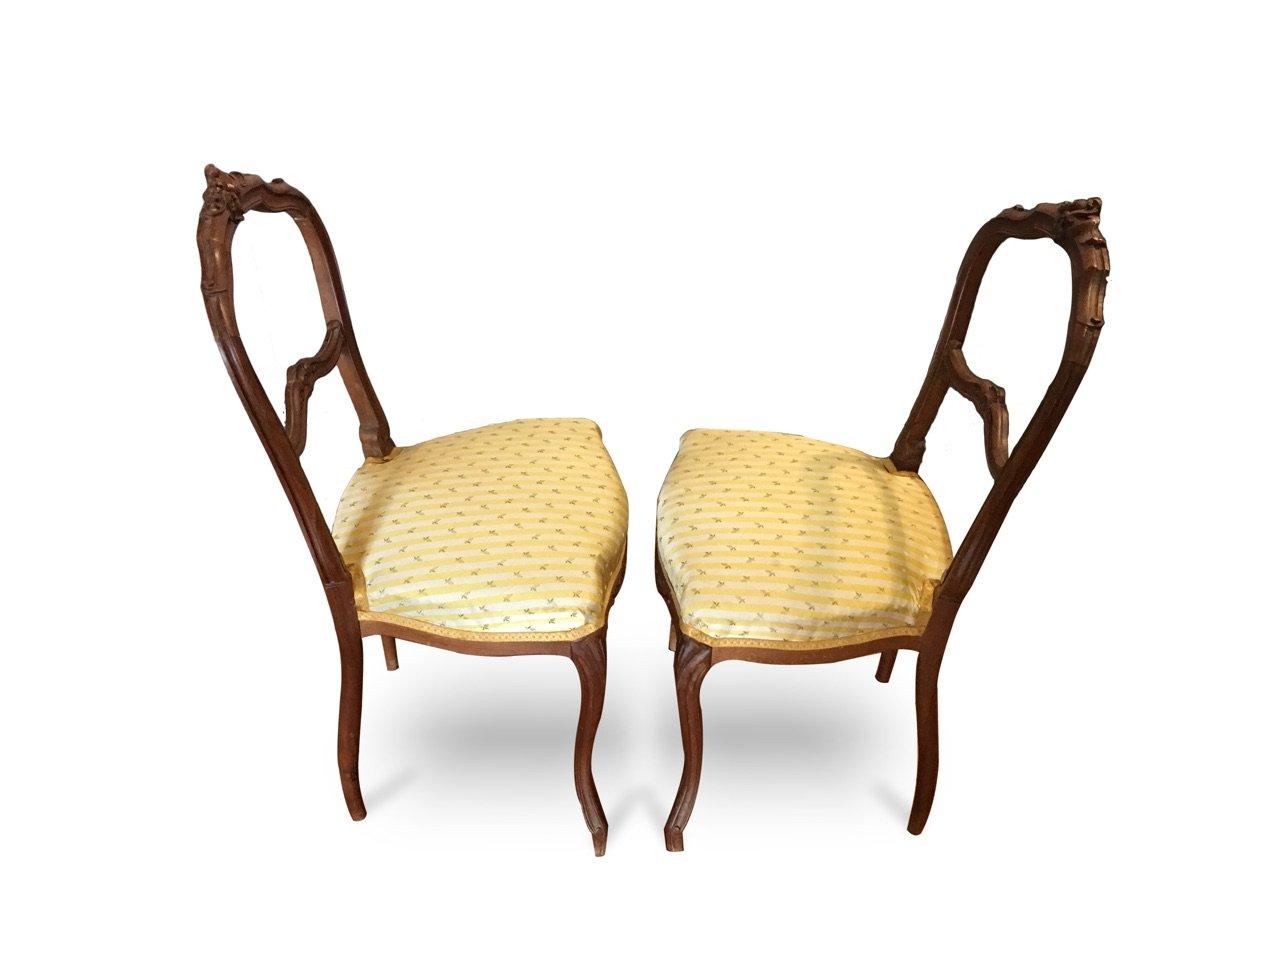 Paire de petites chaises d'appoint du début du XIXe siècle. Construit à l'époque française du 19ème siècle. Affiner le bois de chêne sculpté. Cadre en bon état. Usure conforme à l'âge.